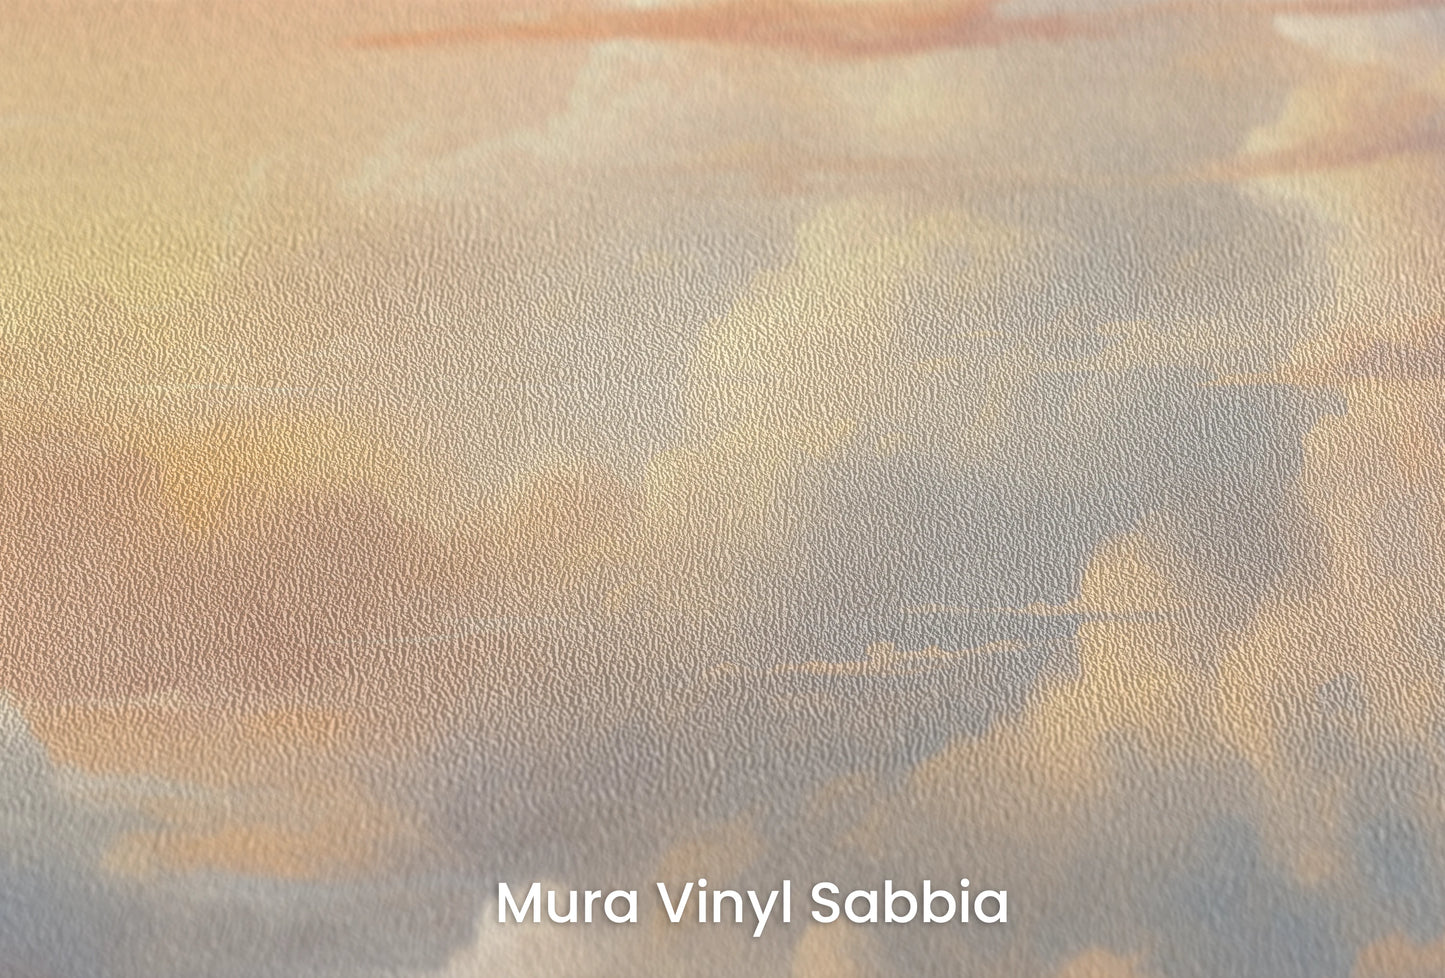 Zbliżenie na artystyczną fototapetę o nazwie Golden Serenity na podłożu Mura Vinyl Sabbia struktura grubego ziarna piasku.